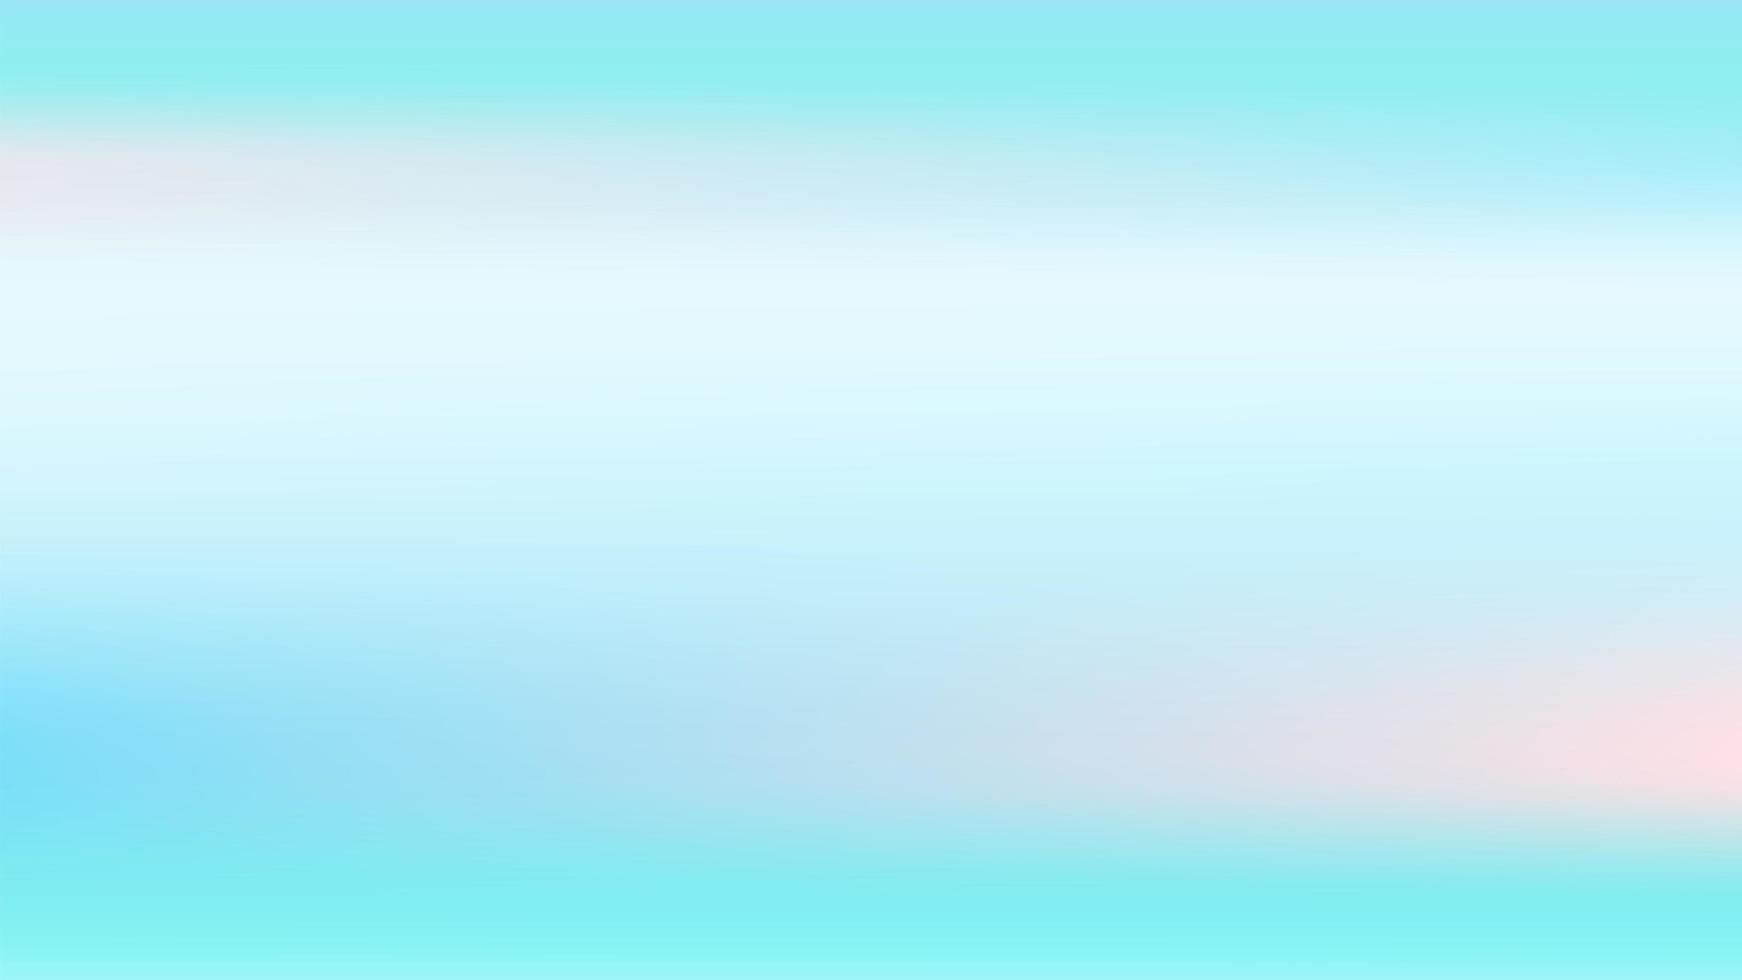 astratto sfondo orizzontale blu e turchese per il design. gradiente di vettore di raso liscio. con riflessi rosa.